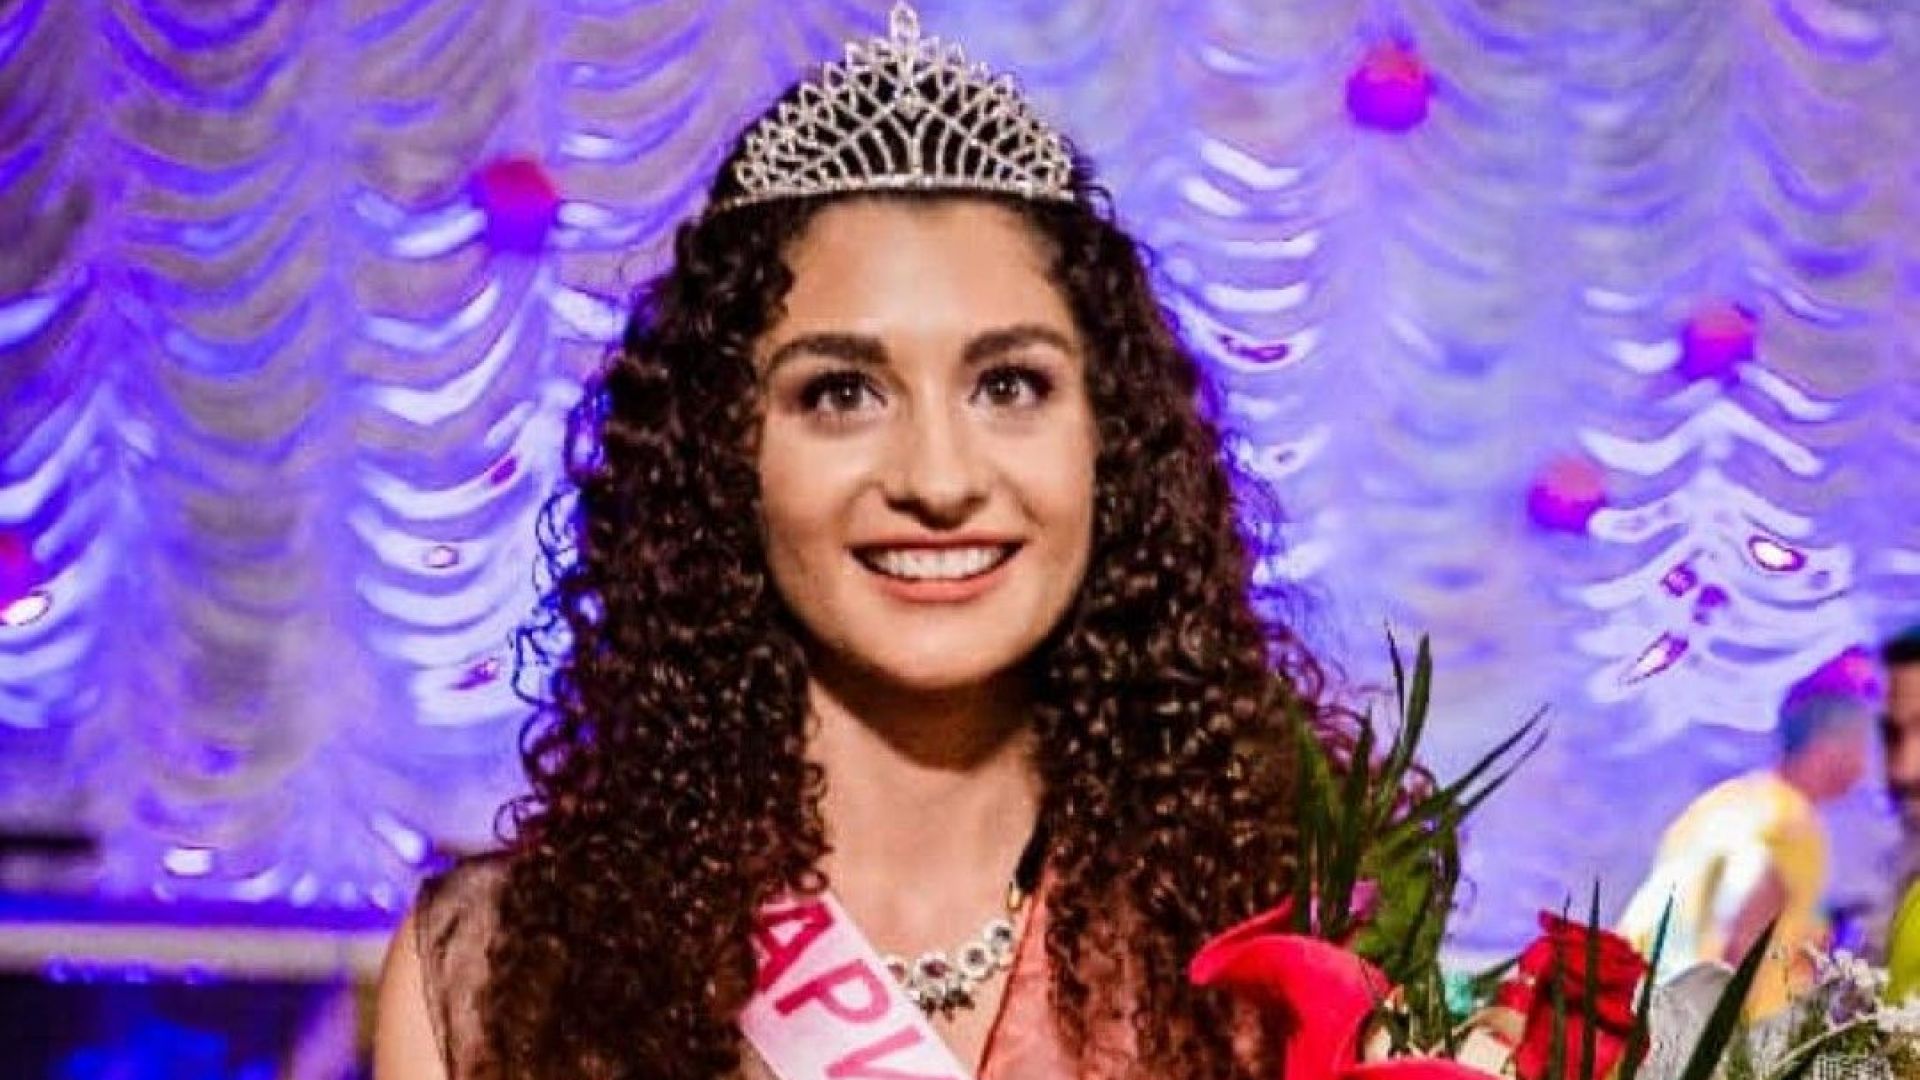 18-годишна бъдеща студентка в "Кингс Колидж" стана "Царица Роза" 2018